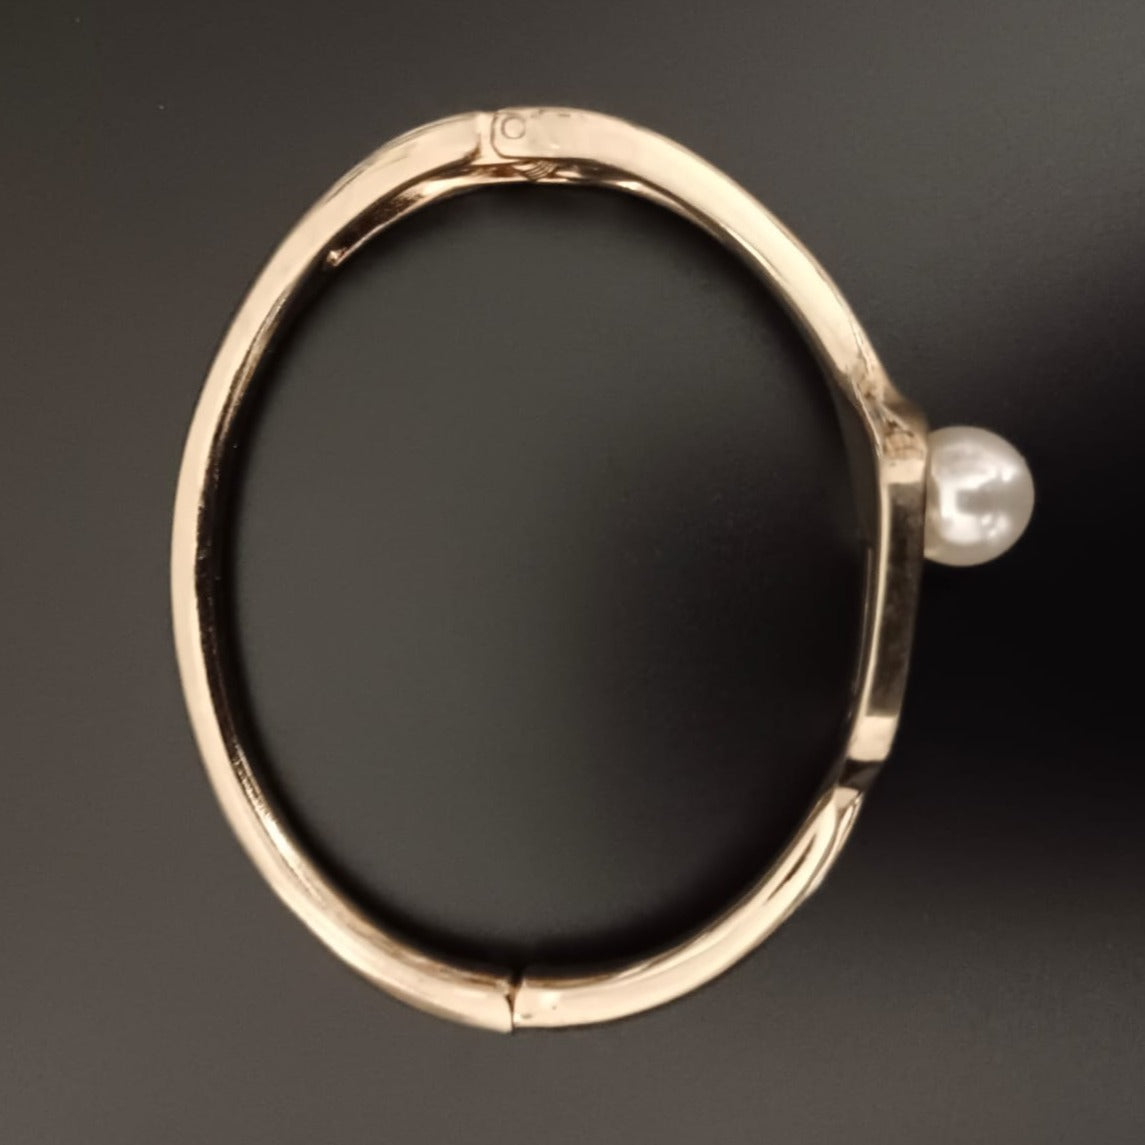 New Golden Pearl Design Kada Bracelet For Women and Girl-Jack Marc